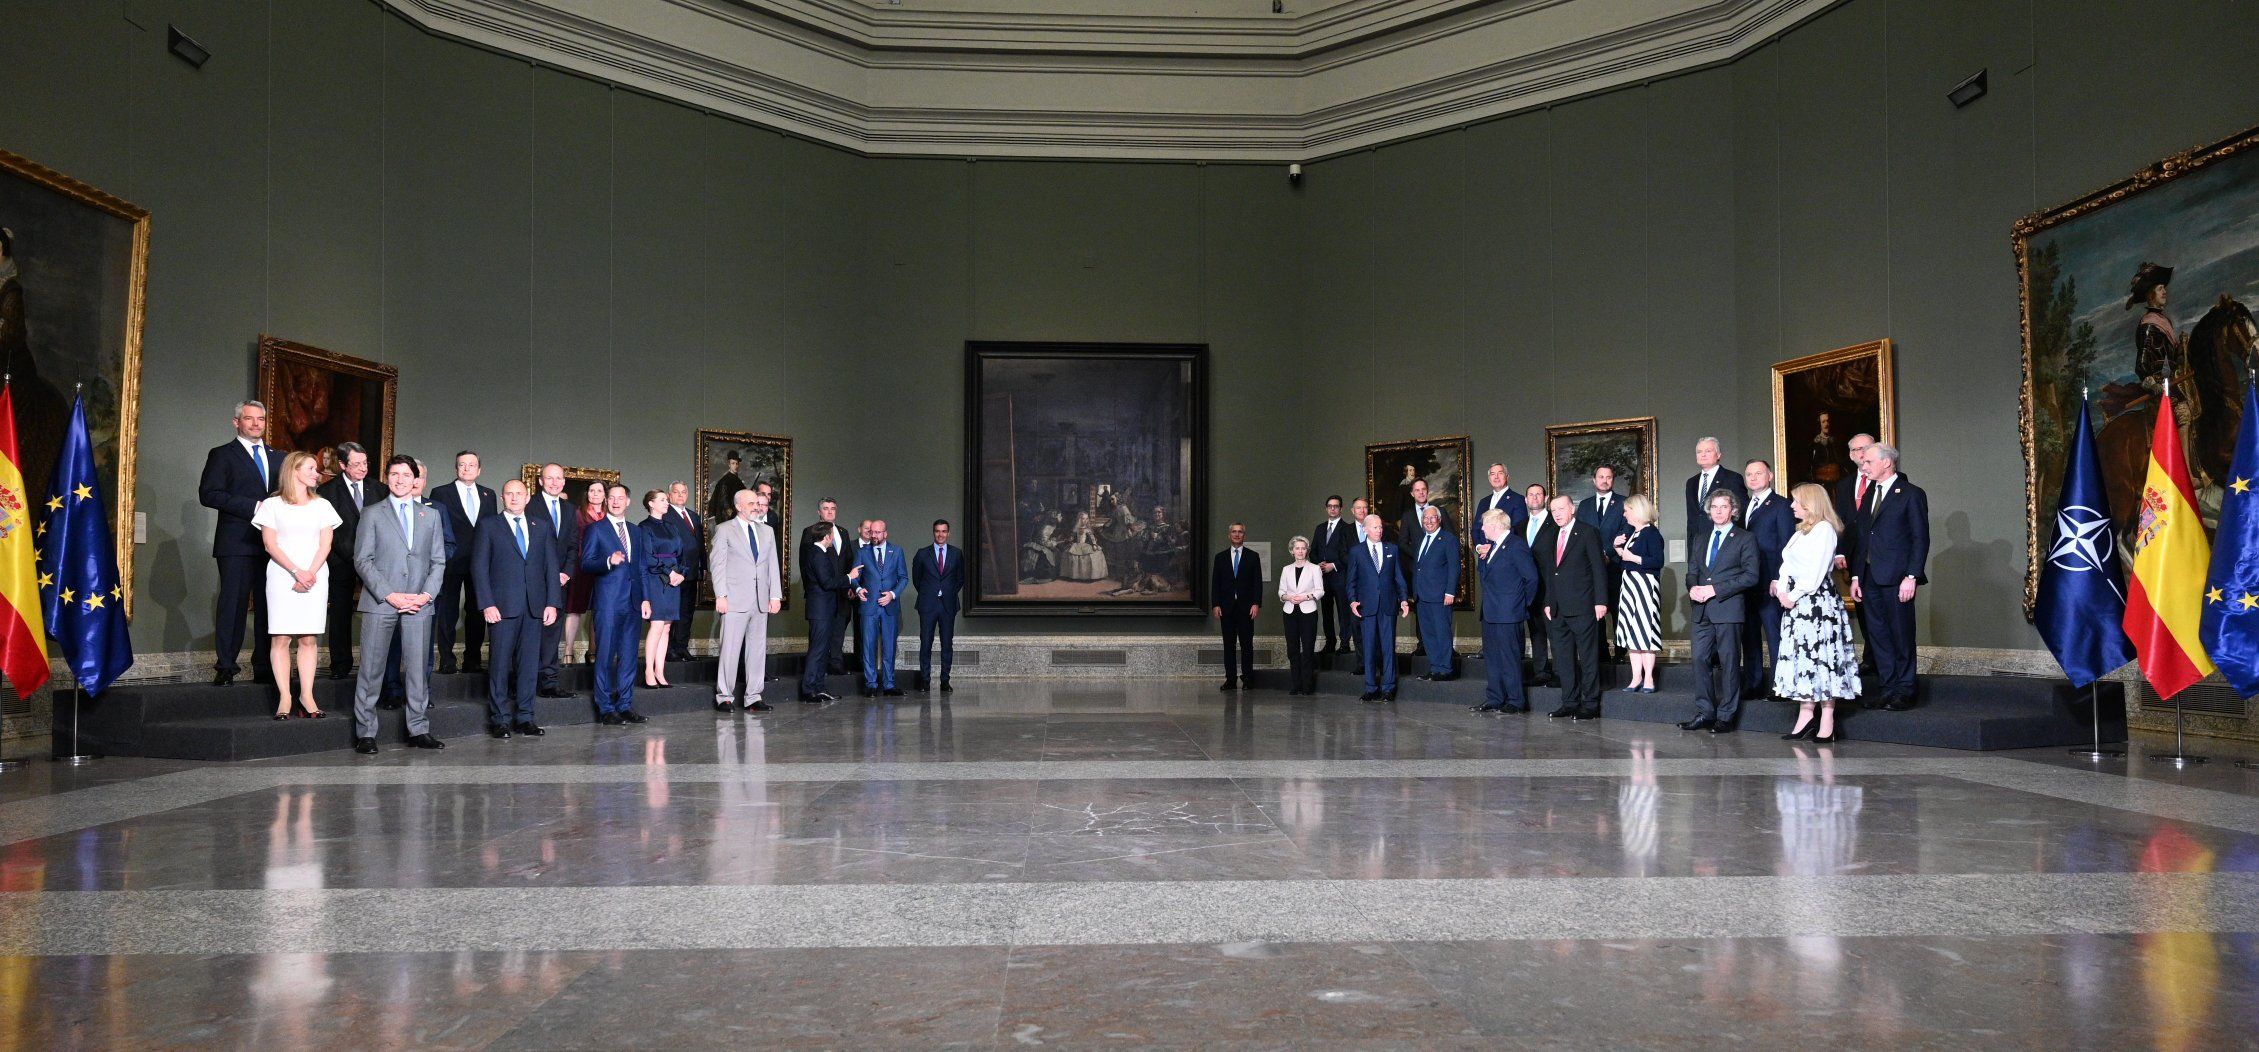 Foto de familia del encuentro histórico Euroatlántico, anoche en el Museo del Prado en Madrid.